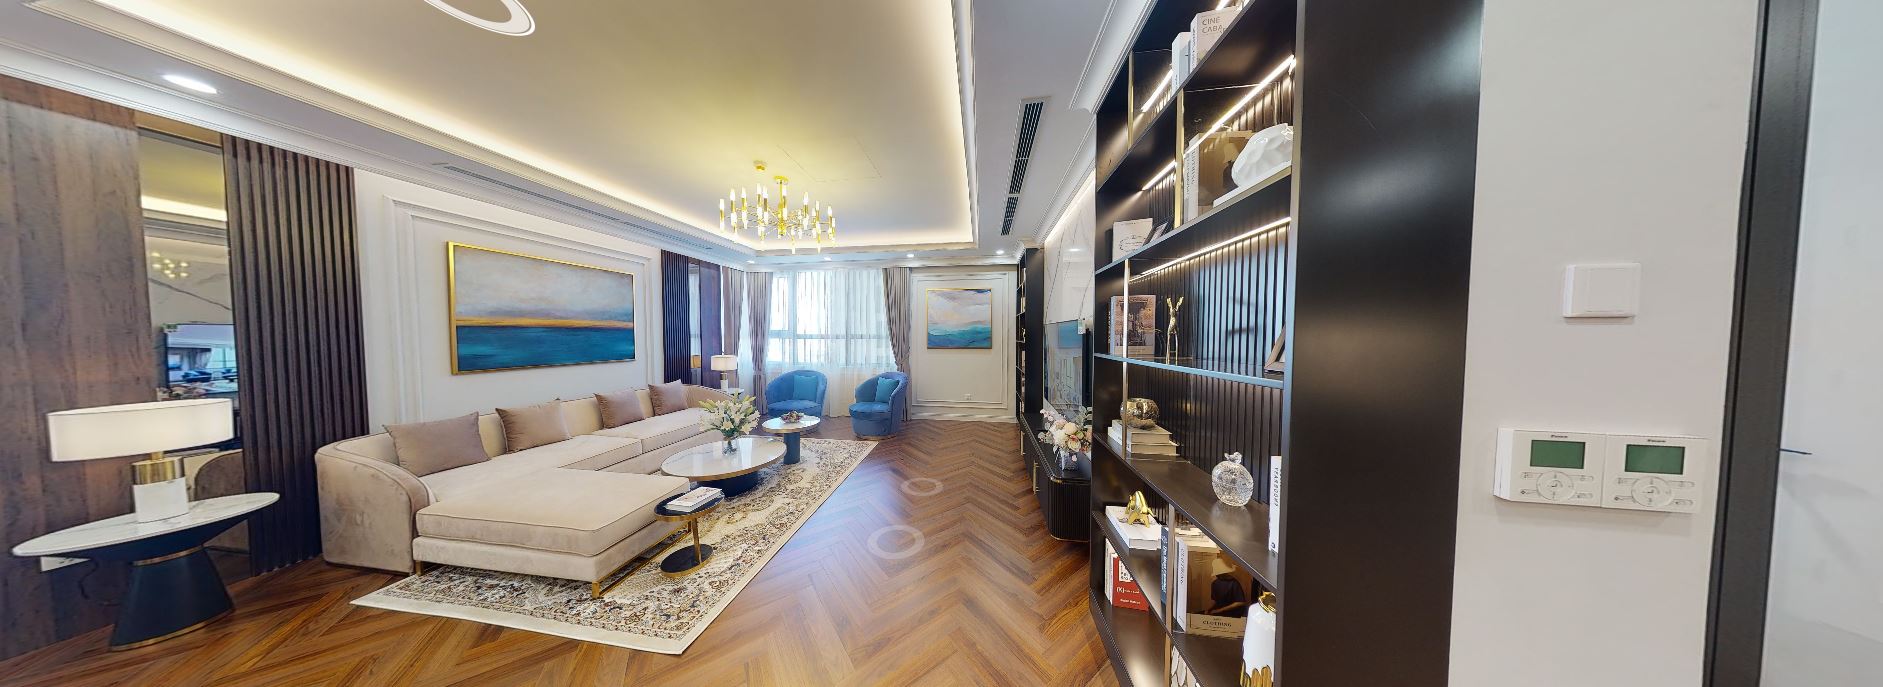 Phòng khách căn hộ được tối ưu khi loại bỏ logia giúp tăng diện tích sử dụng trong phòng khách